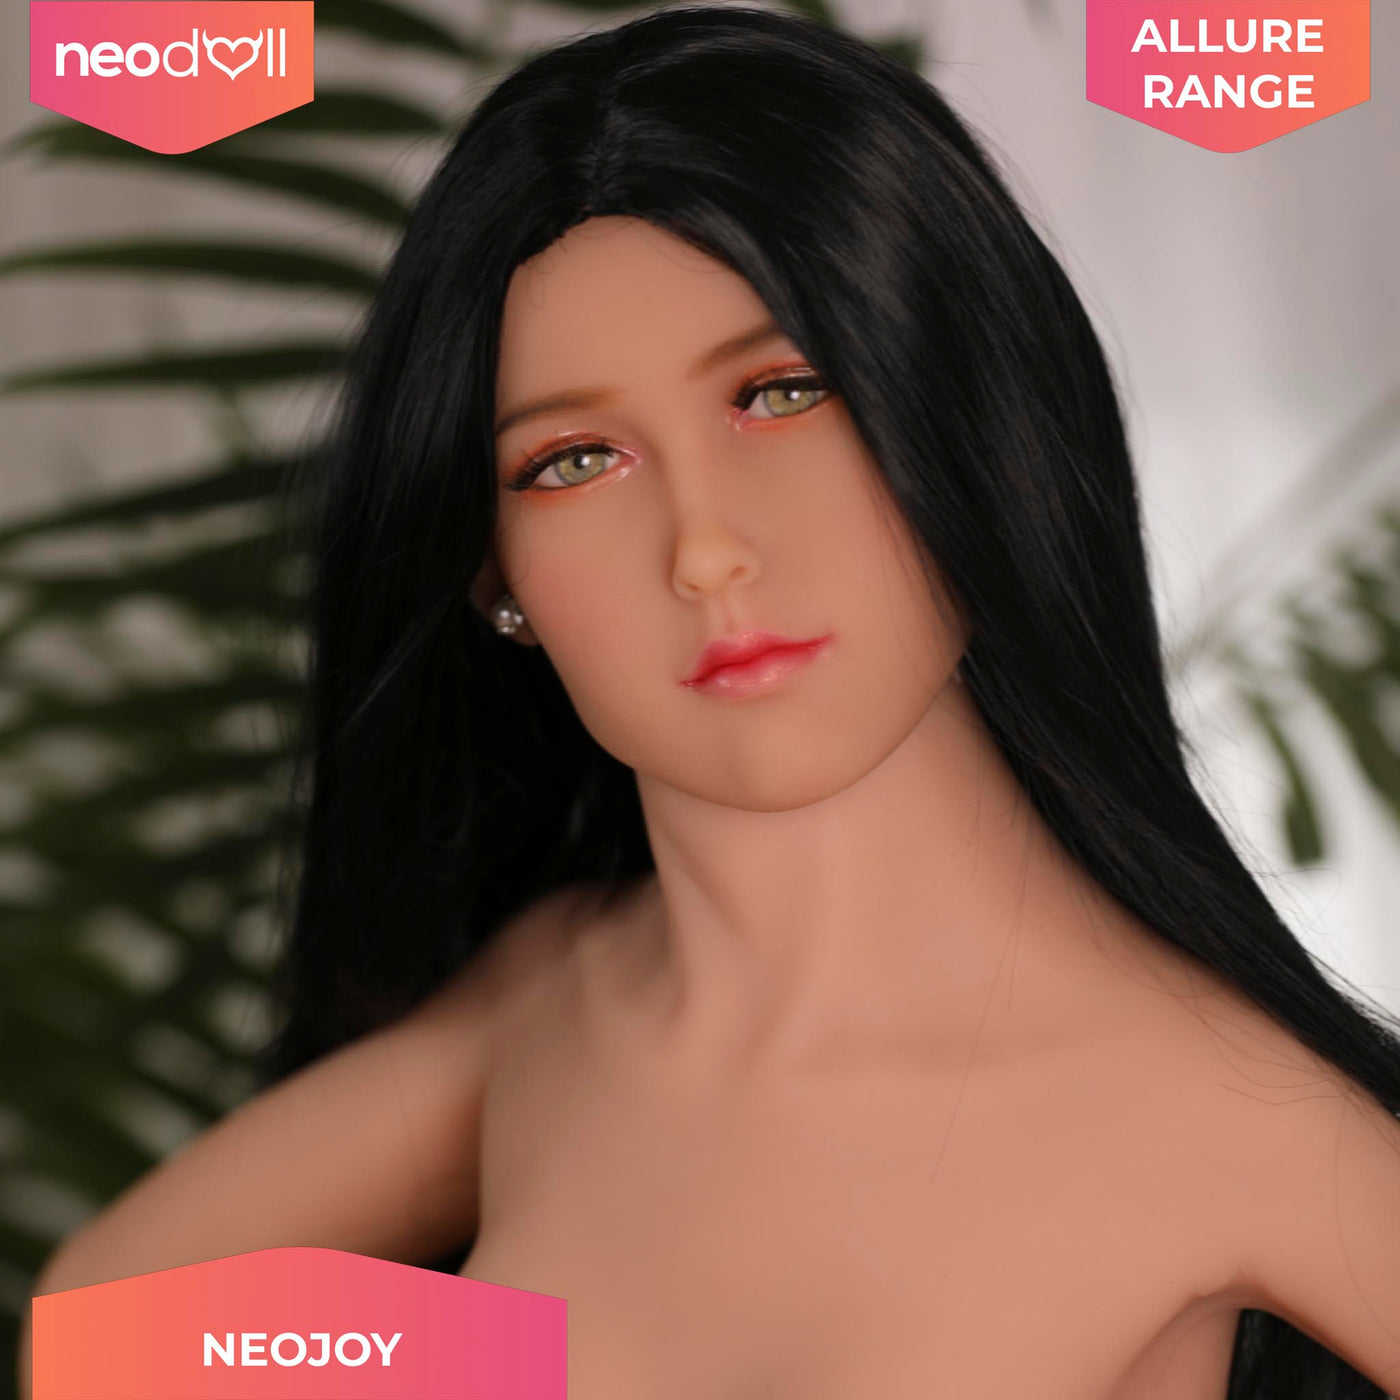 Neodoll Allure Danica - Realistic Sex Doll - 150cm - Tan